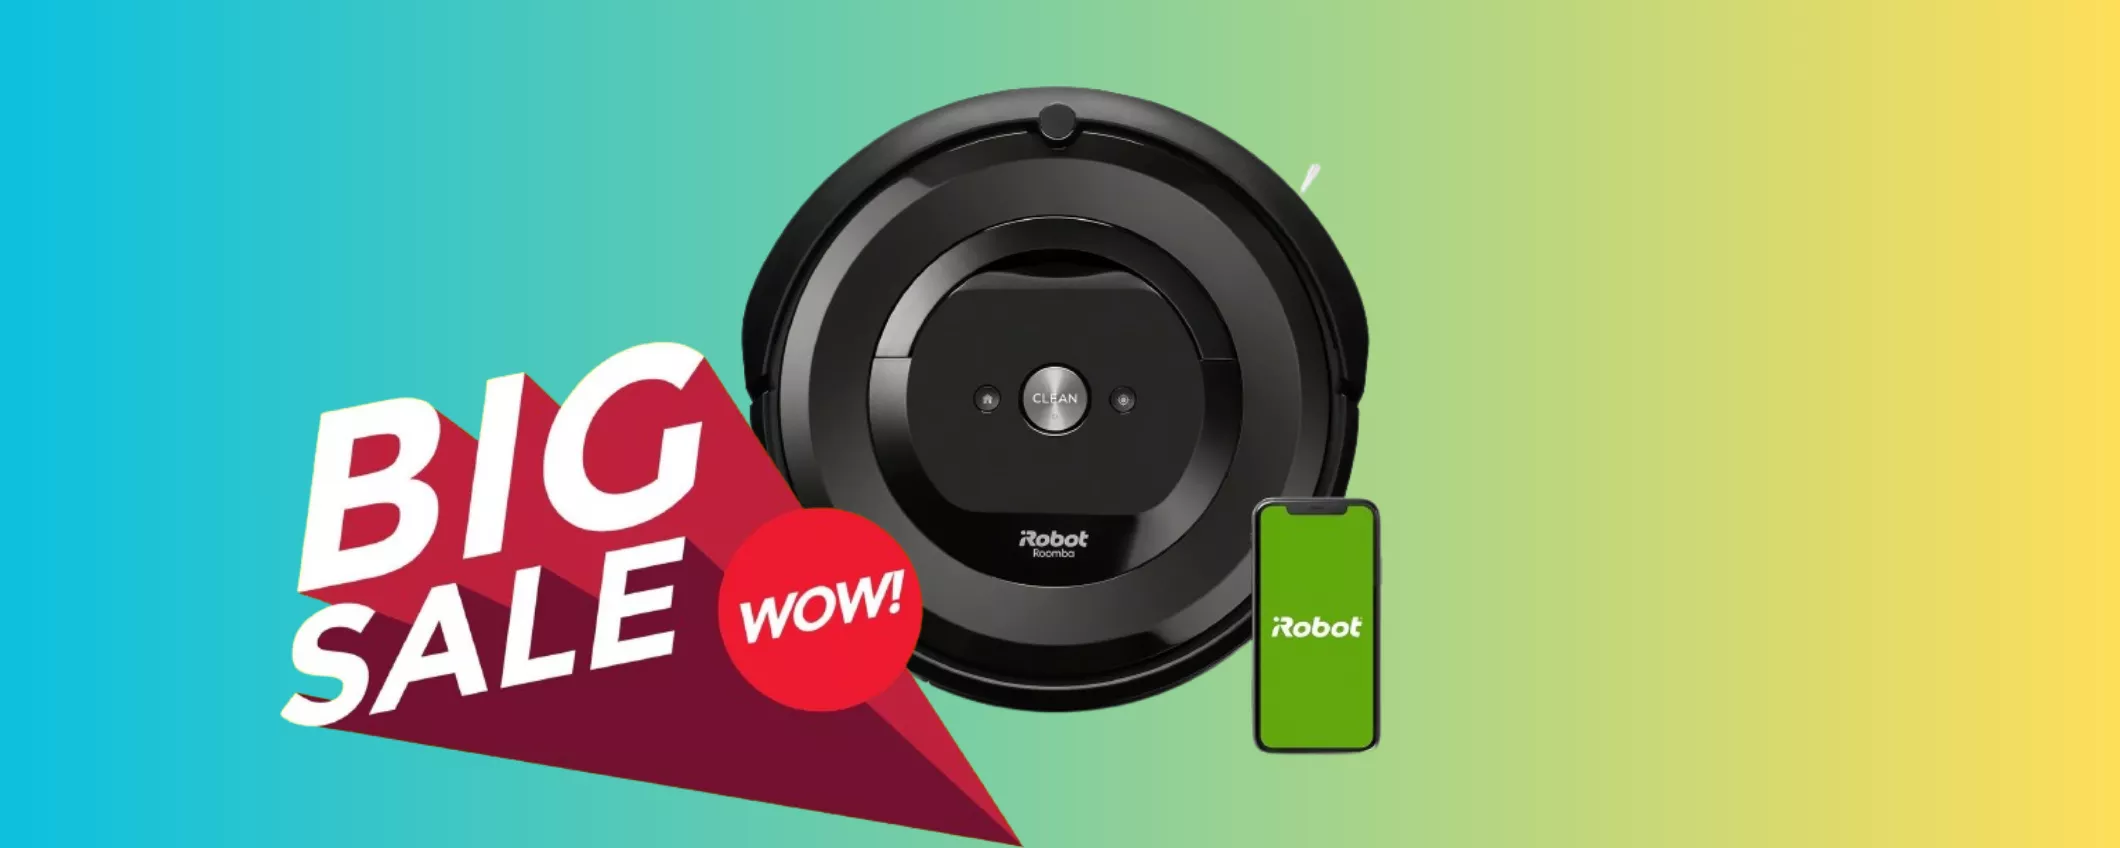 Pulizia di casa A ZERO STRESS con l'iRobot Roomba i7: oggi RISPARMI 250 EURO